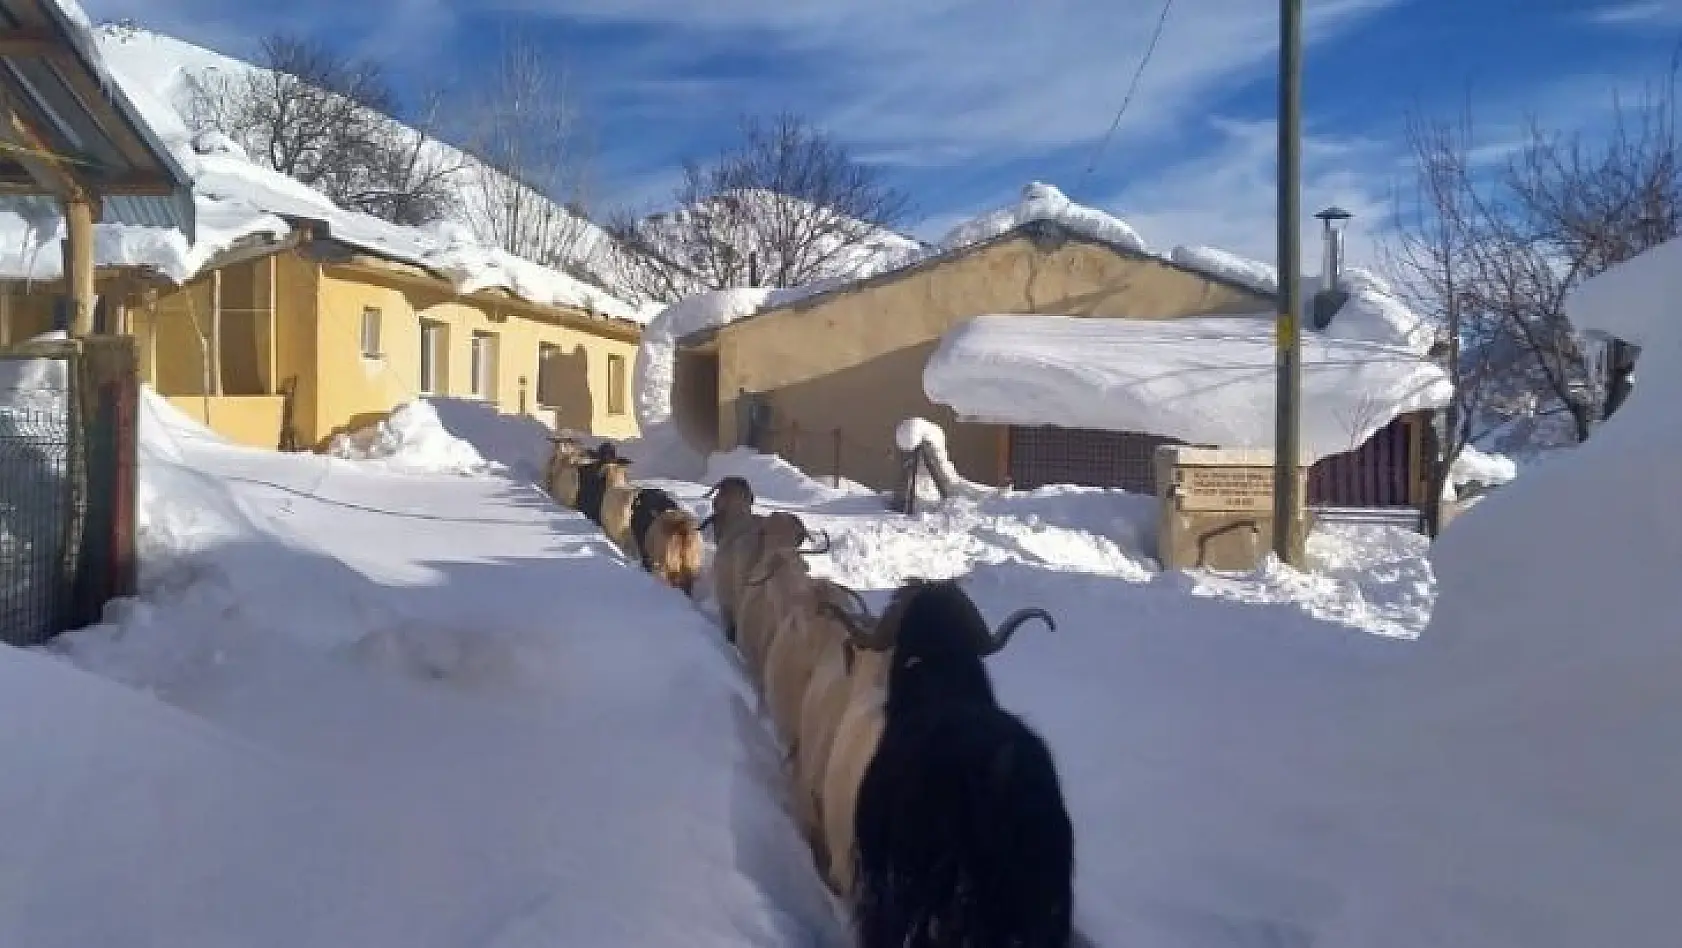 Keçilerin zorlu kış şartlarında karın doyurma mücadelesi